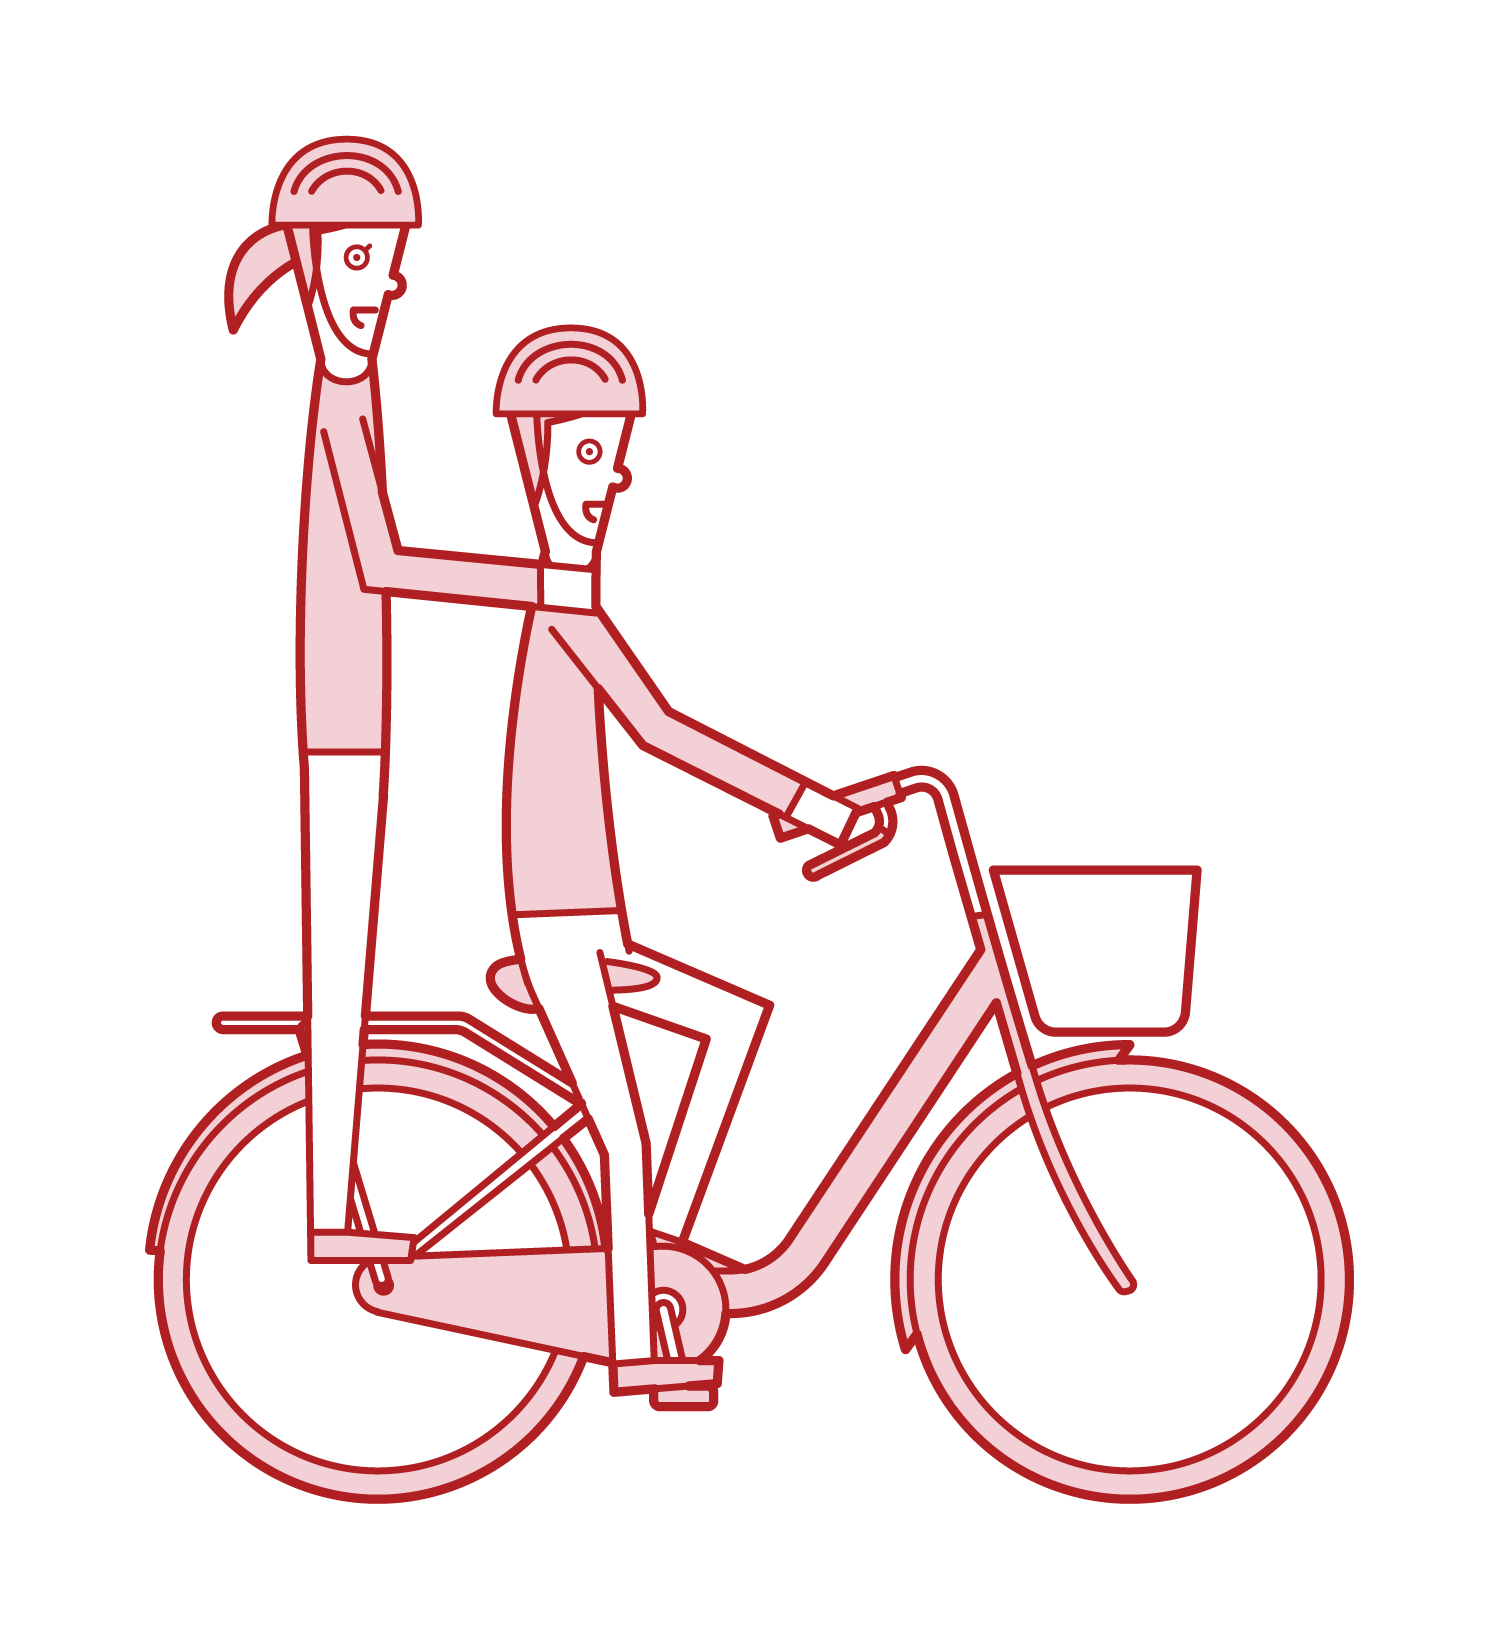 自転車で二人乗りをする人達のイラスト